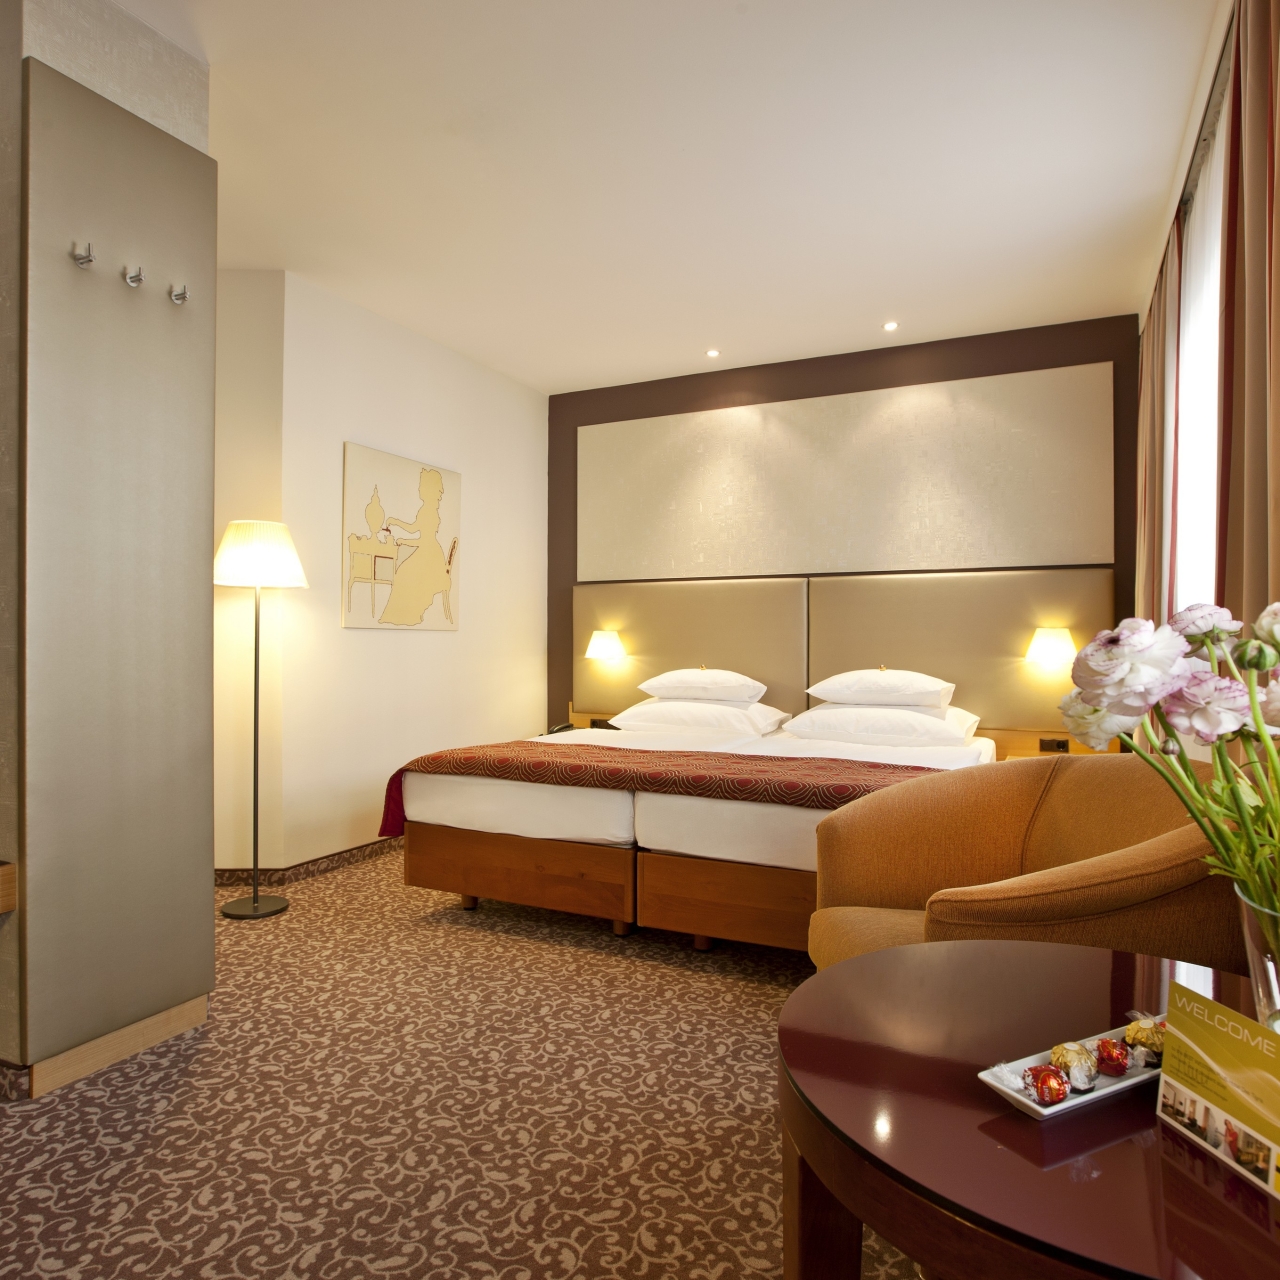 Hotel Das Tigra - 4 HRS star hotel in Vienna (Vienna)